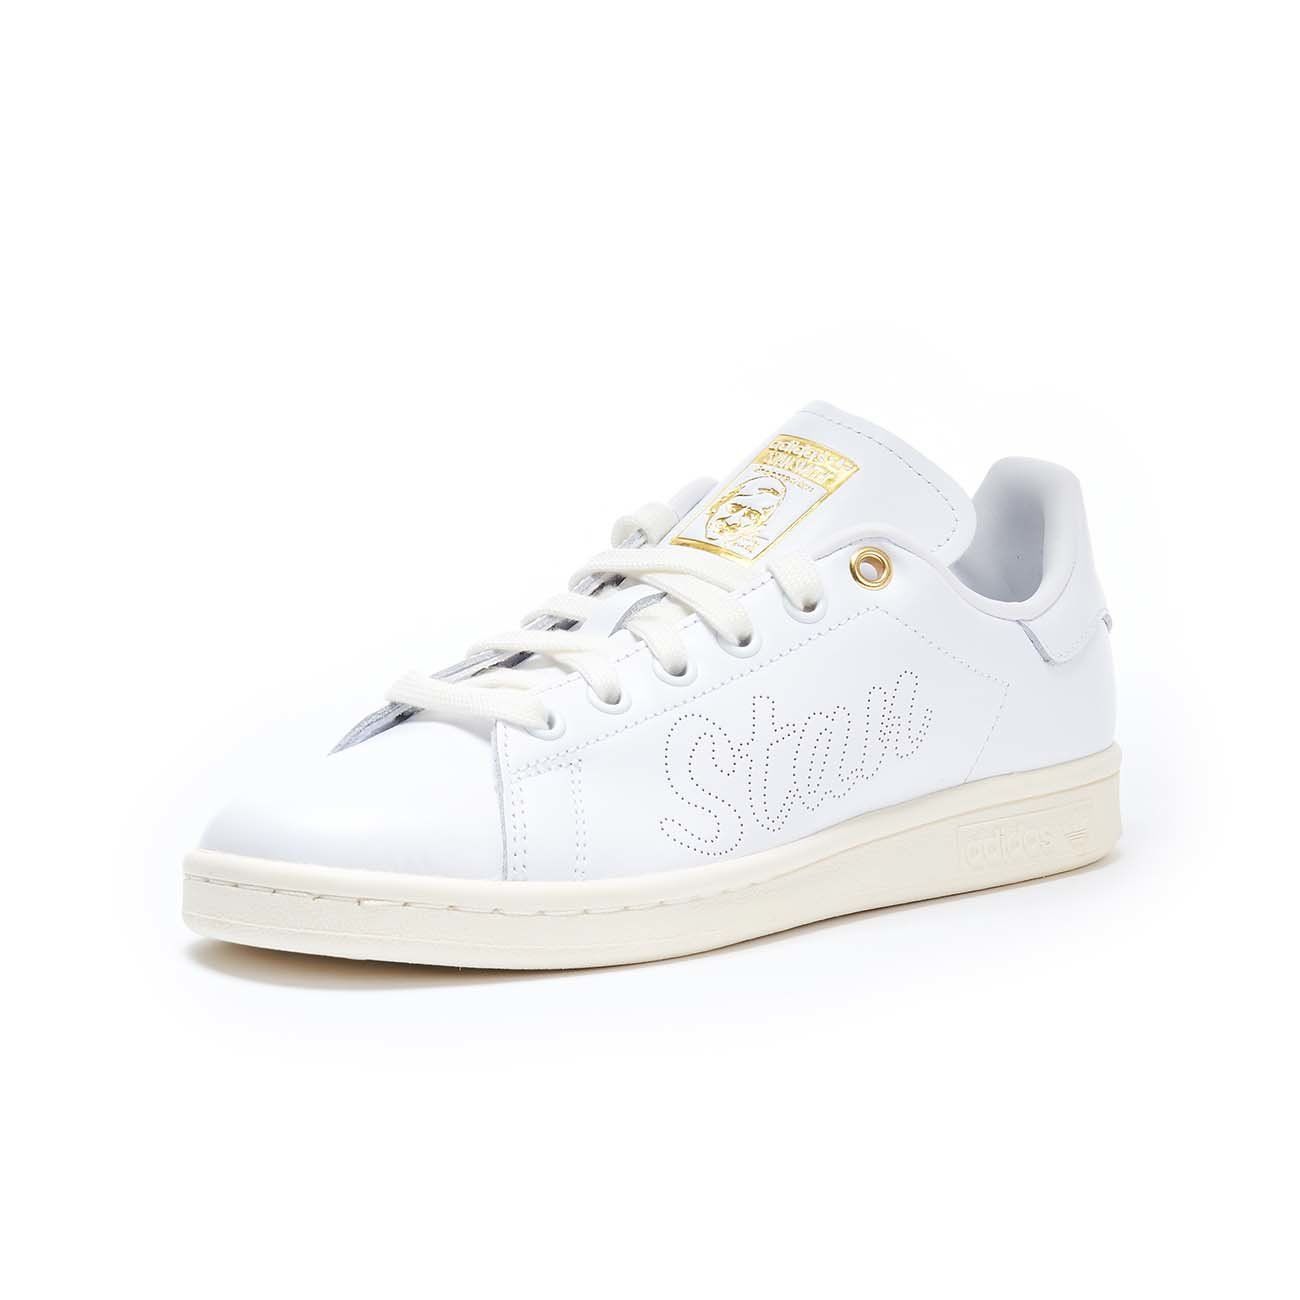 Adidas Originals W Stan Smith Black GOLD Khaki Off White Shoes